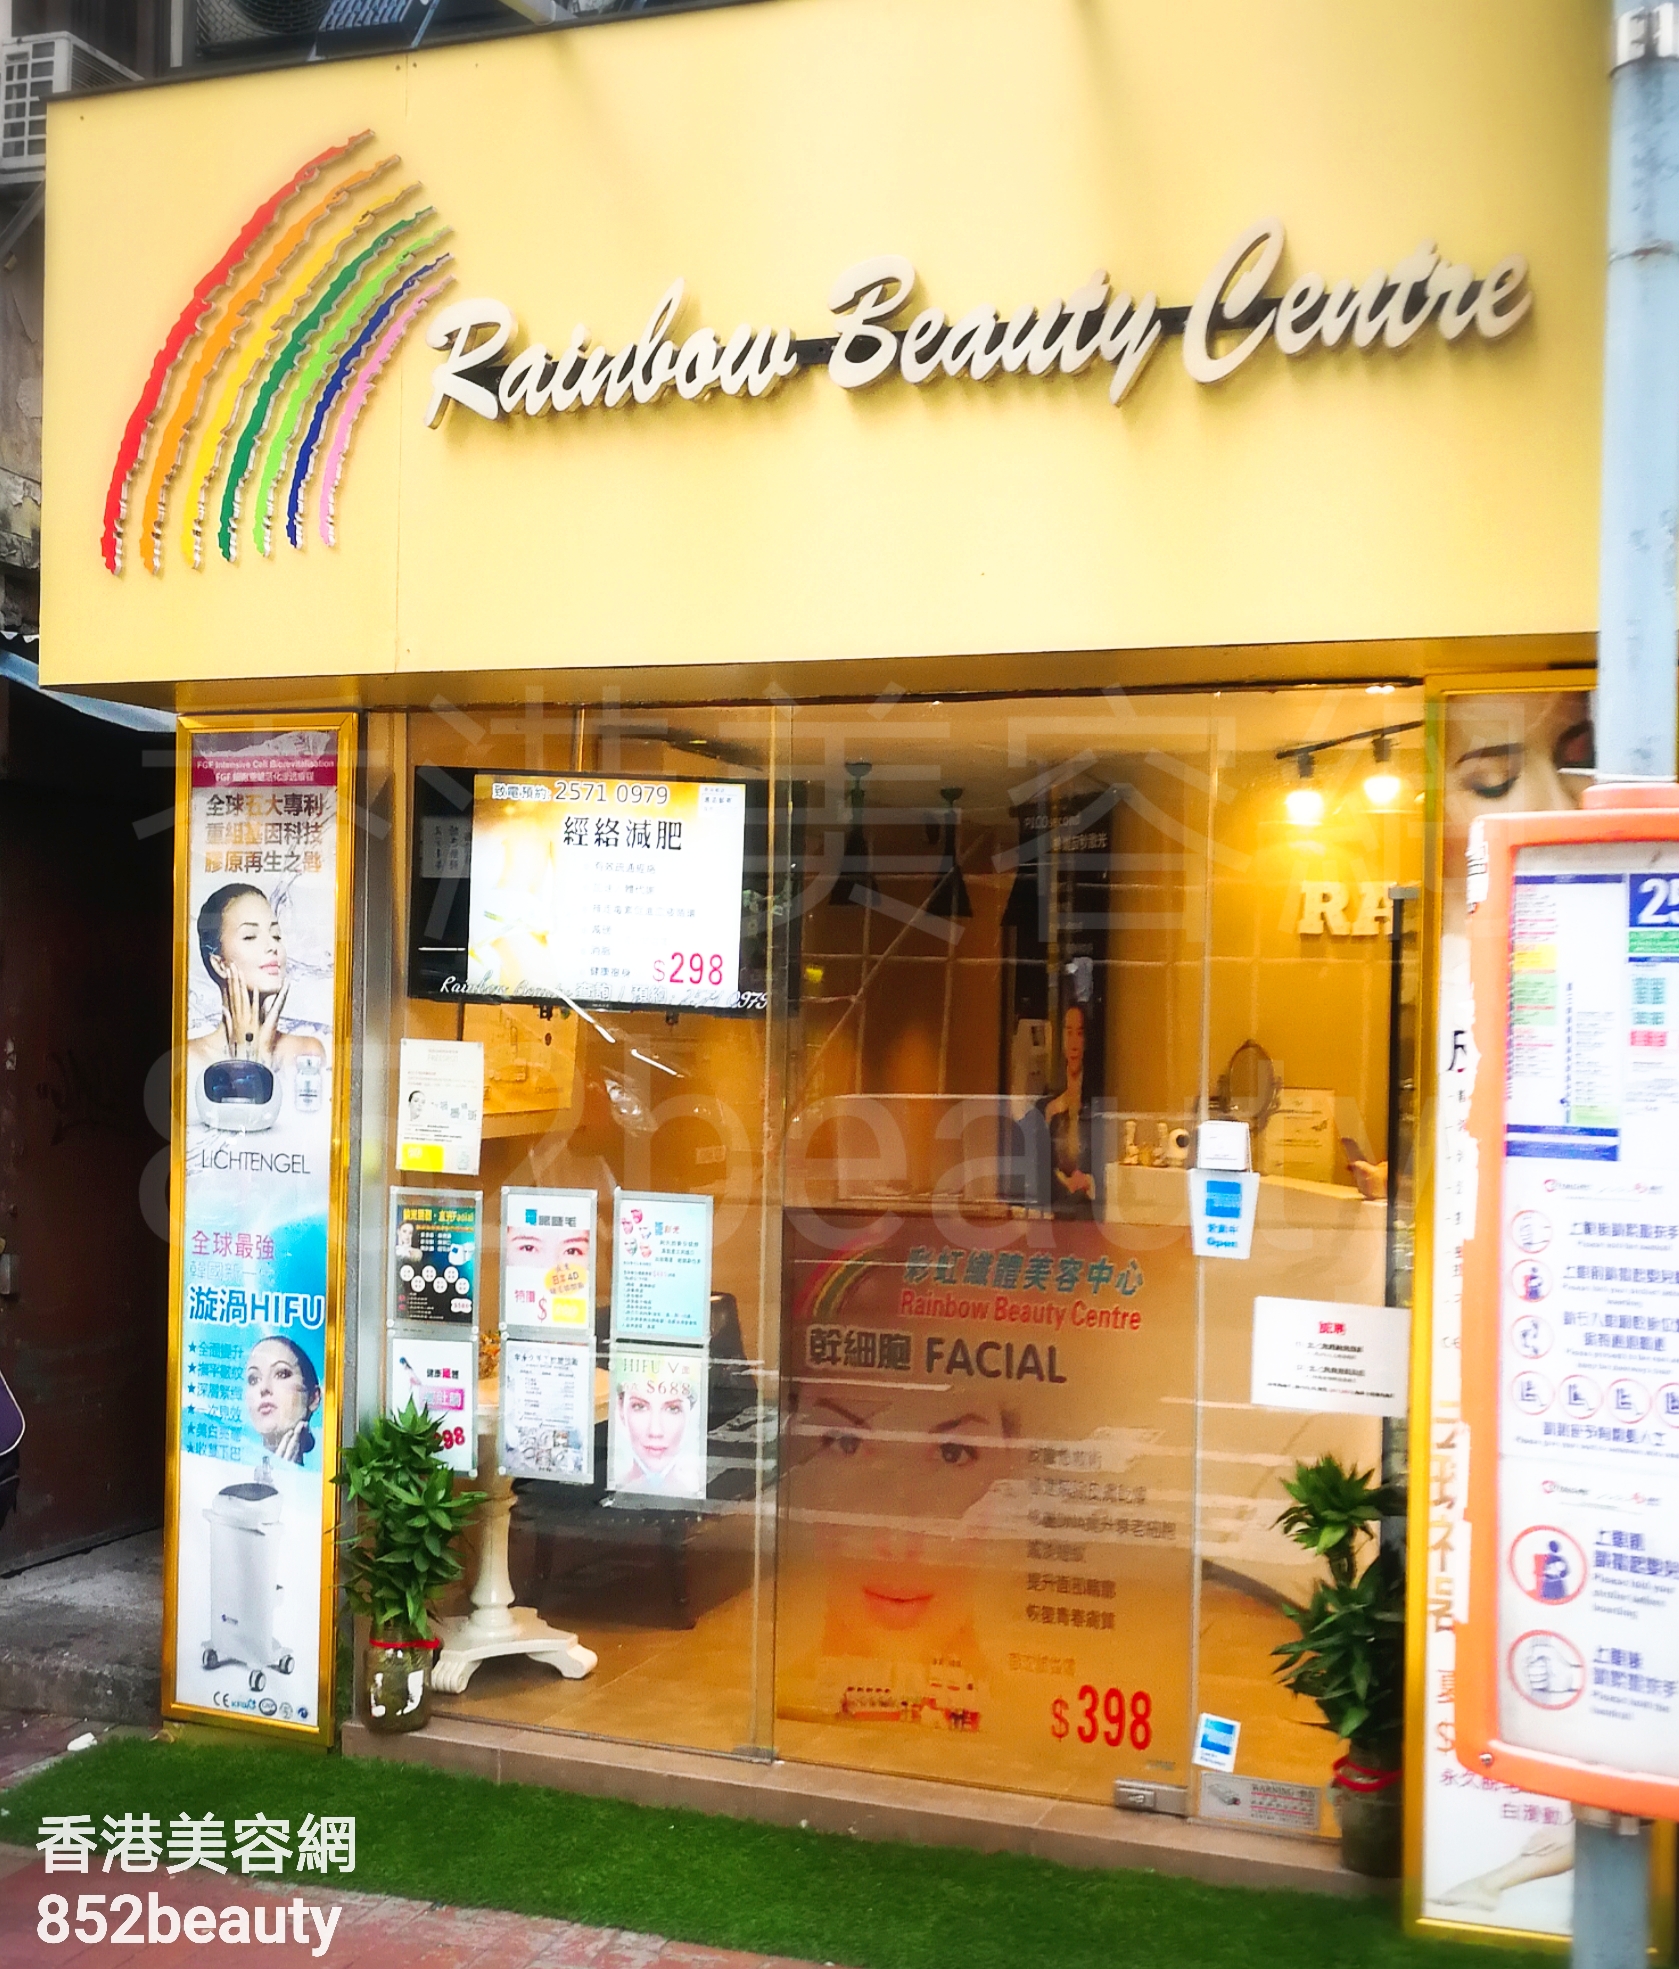 脫毛: Rainbow Beauty Centre